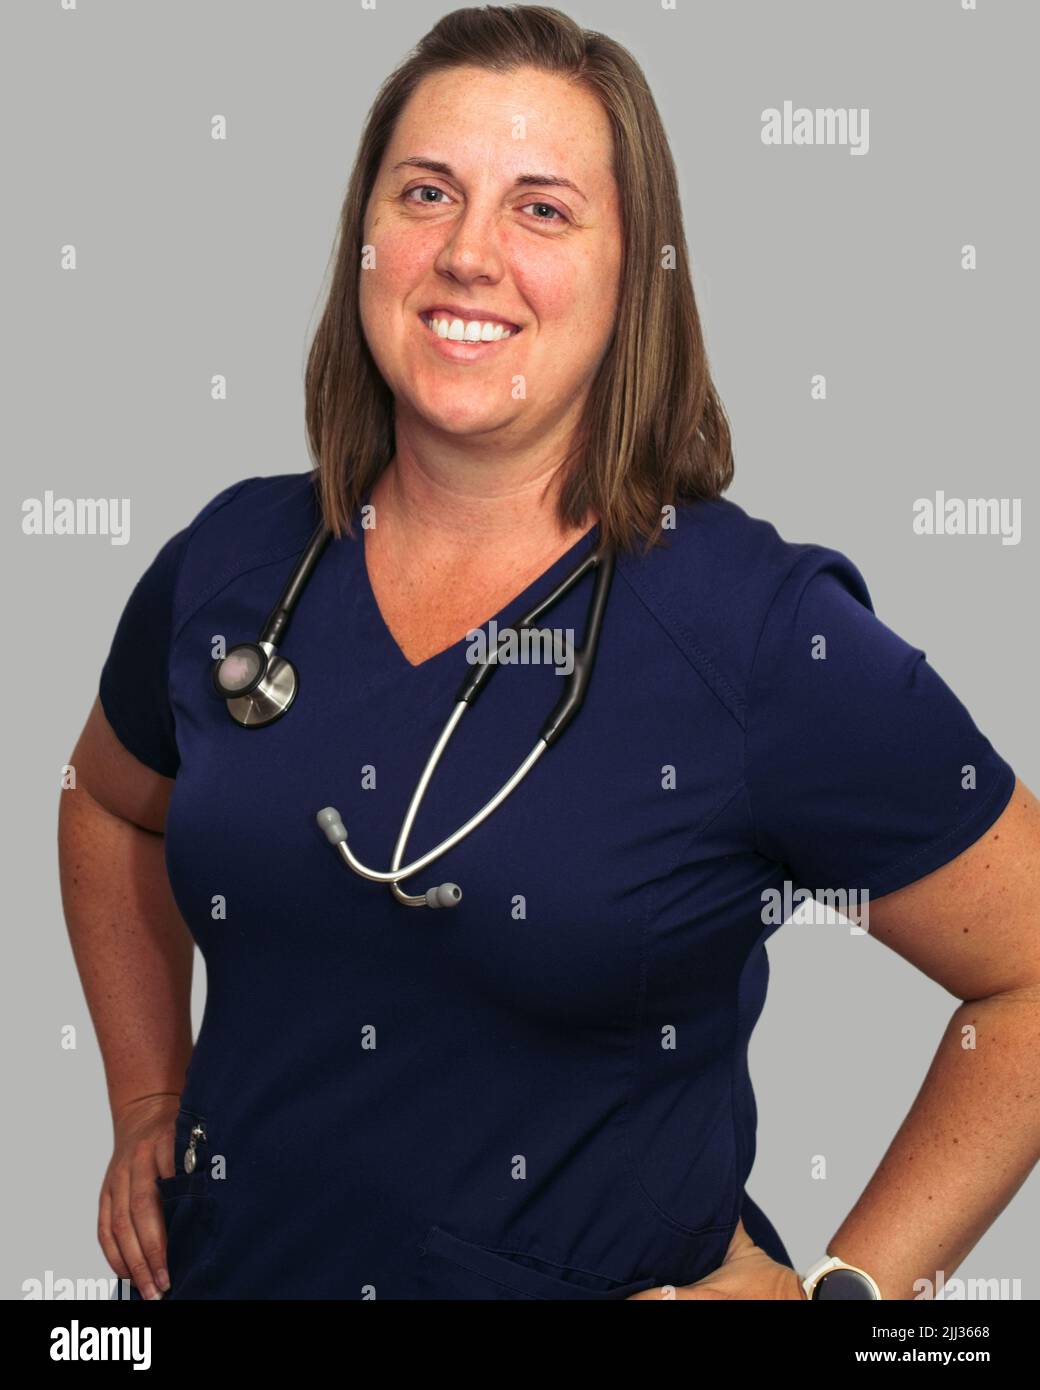 La profession médicale n'est pas facile, mais elle est certainement gratifiante pour cette infirmière praticienne souriante. Banque D'Images